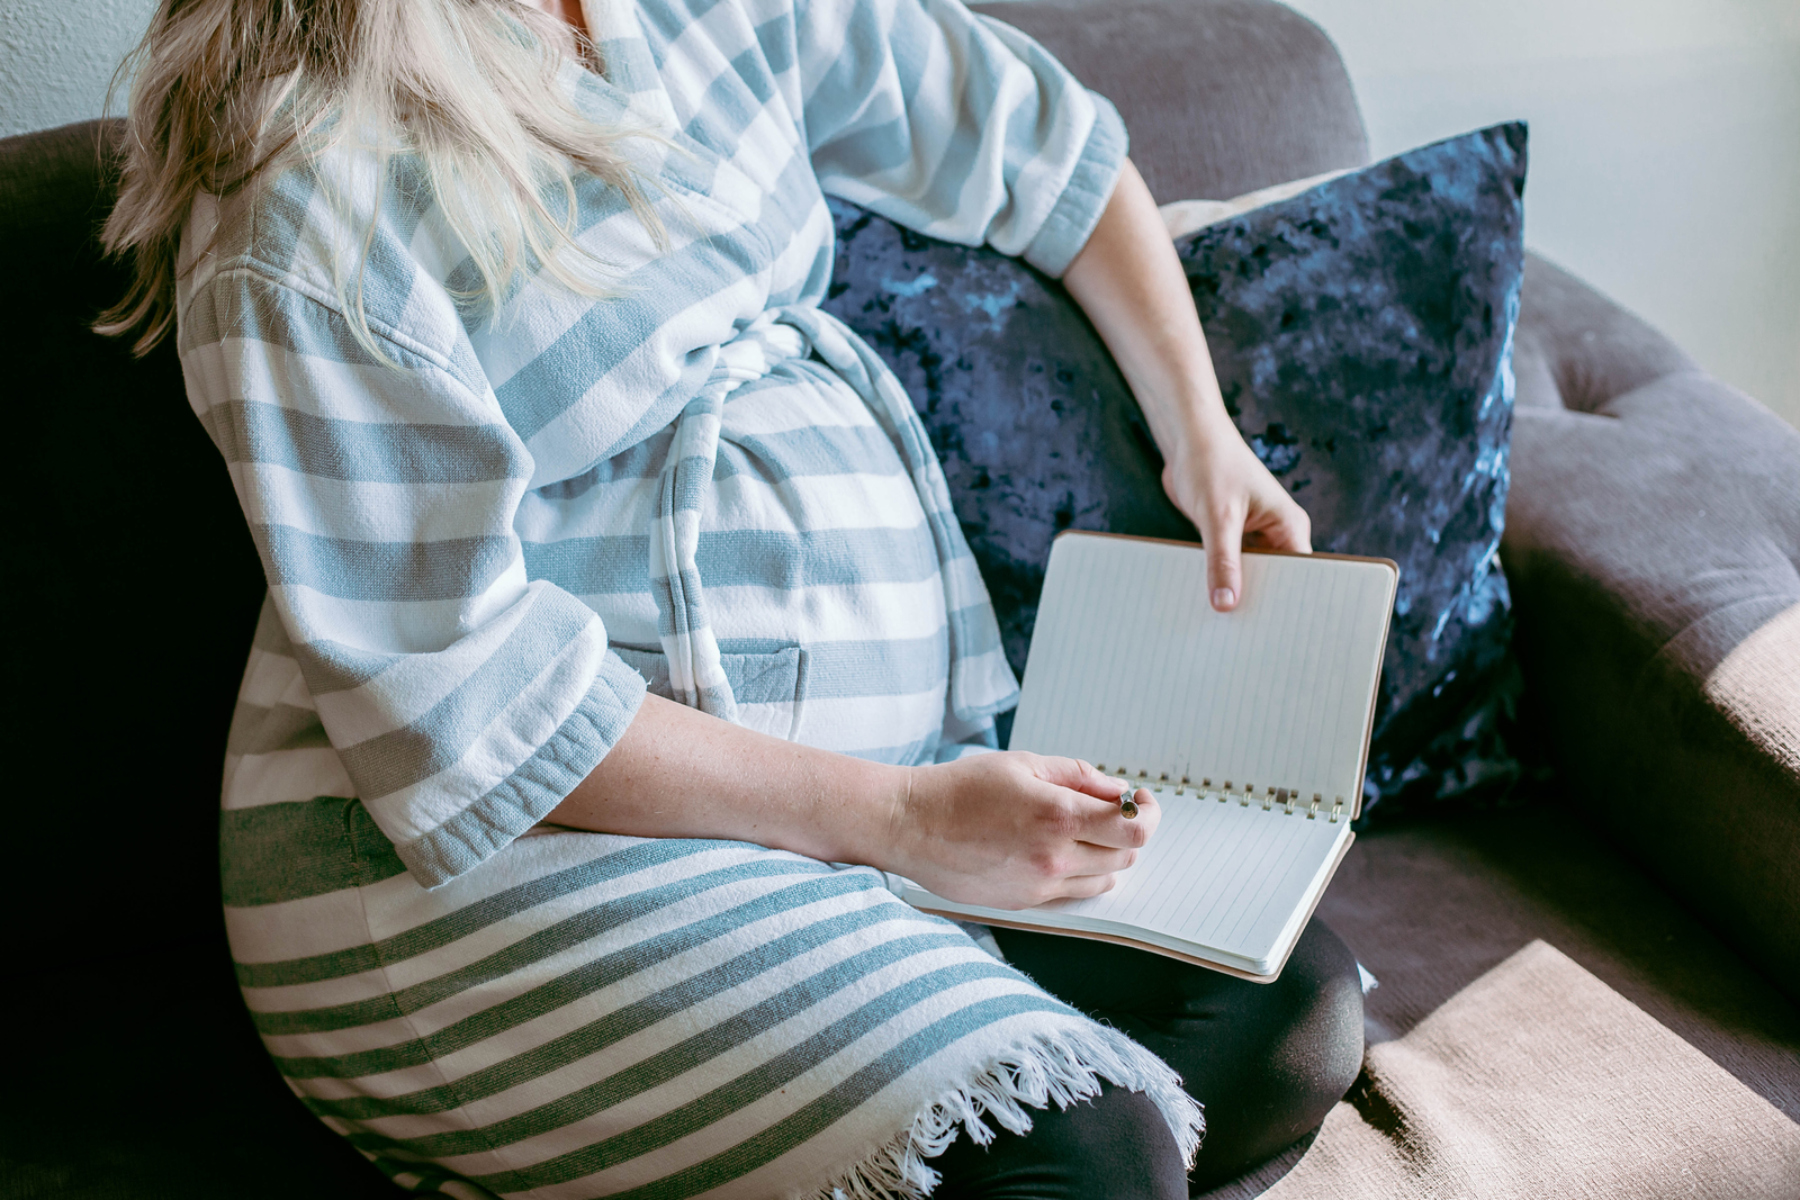 Γονιμότητα: Μπορεί η θεραπεία γονιμότητας να προκαλέσει εγκεφαλικό επεισόδιο;